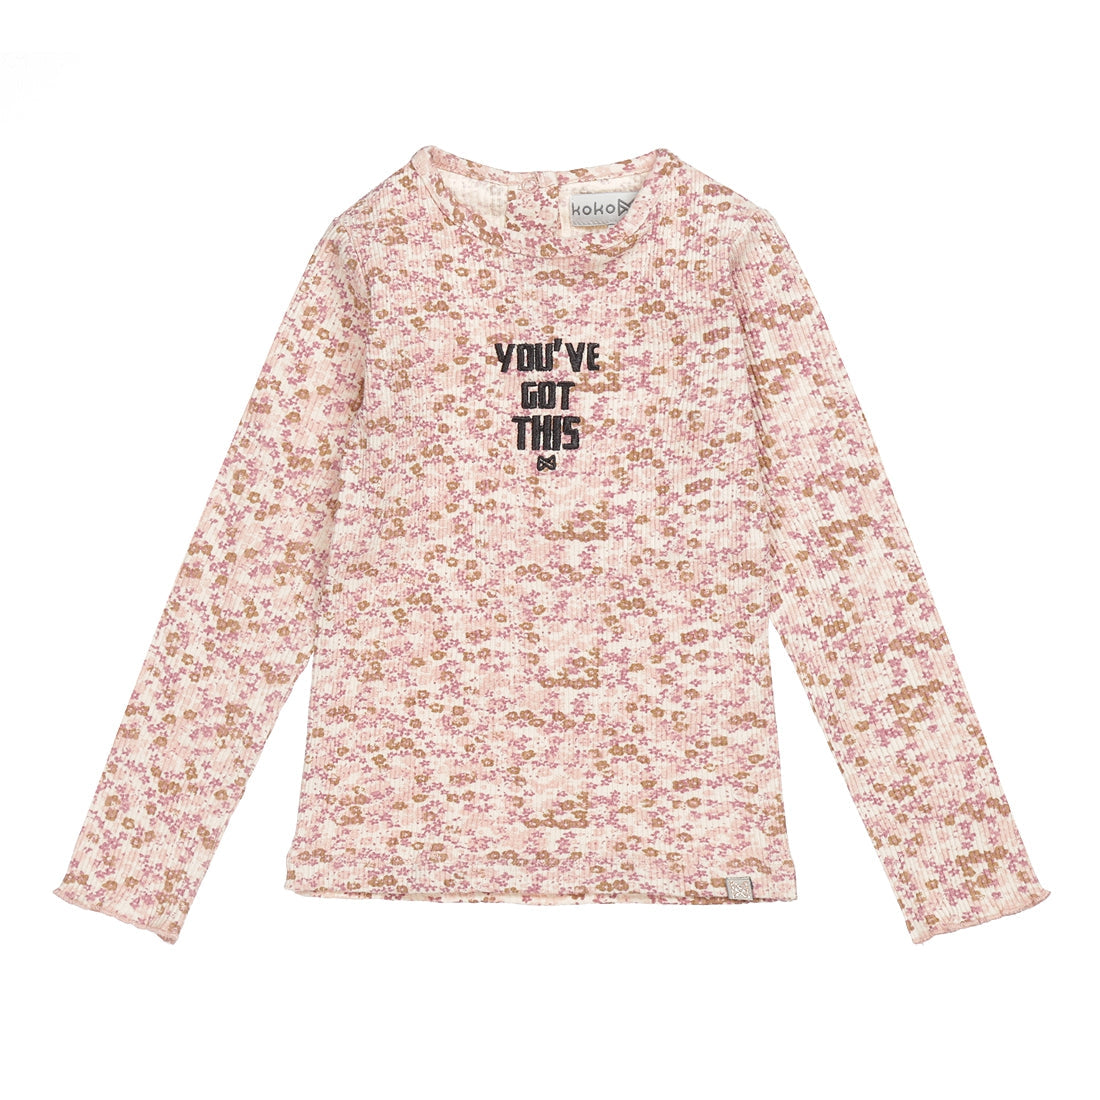 Meisjes T-shirt ls van Koko Noko in de kleur Dusty pink in maat 128.